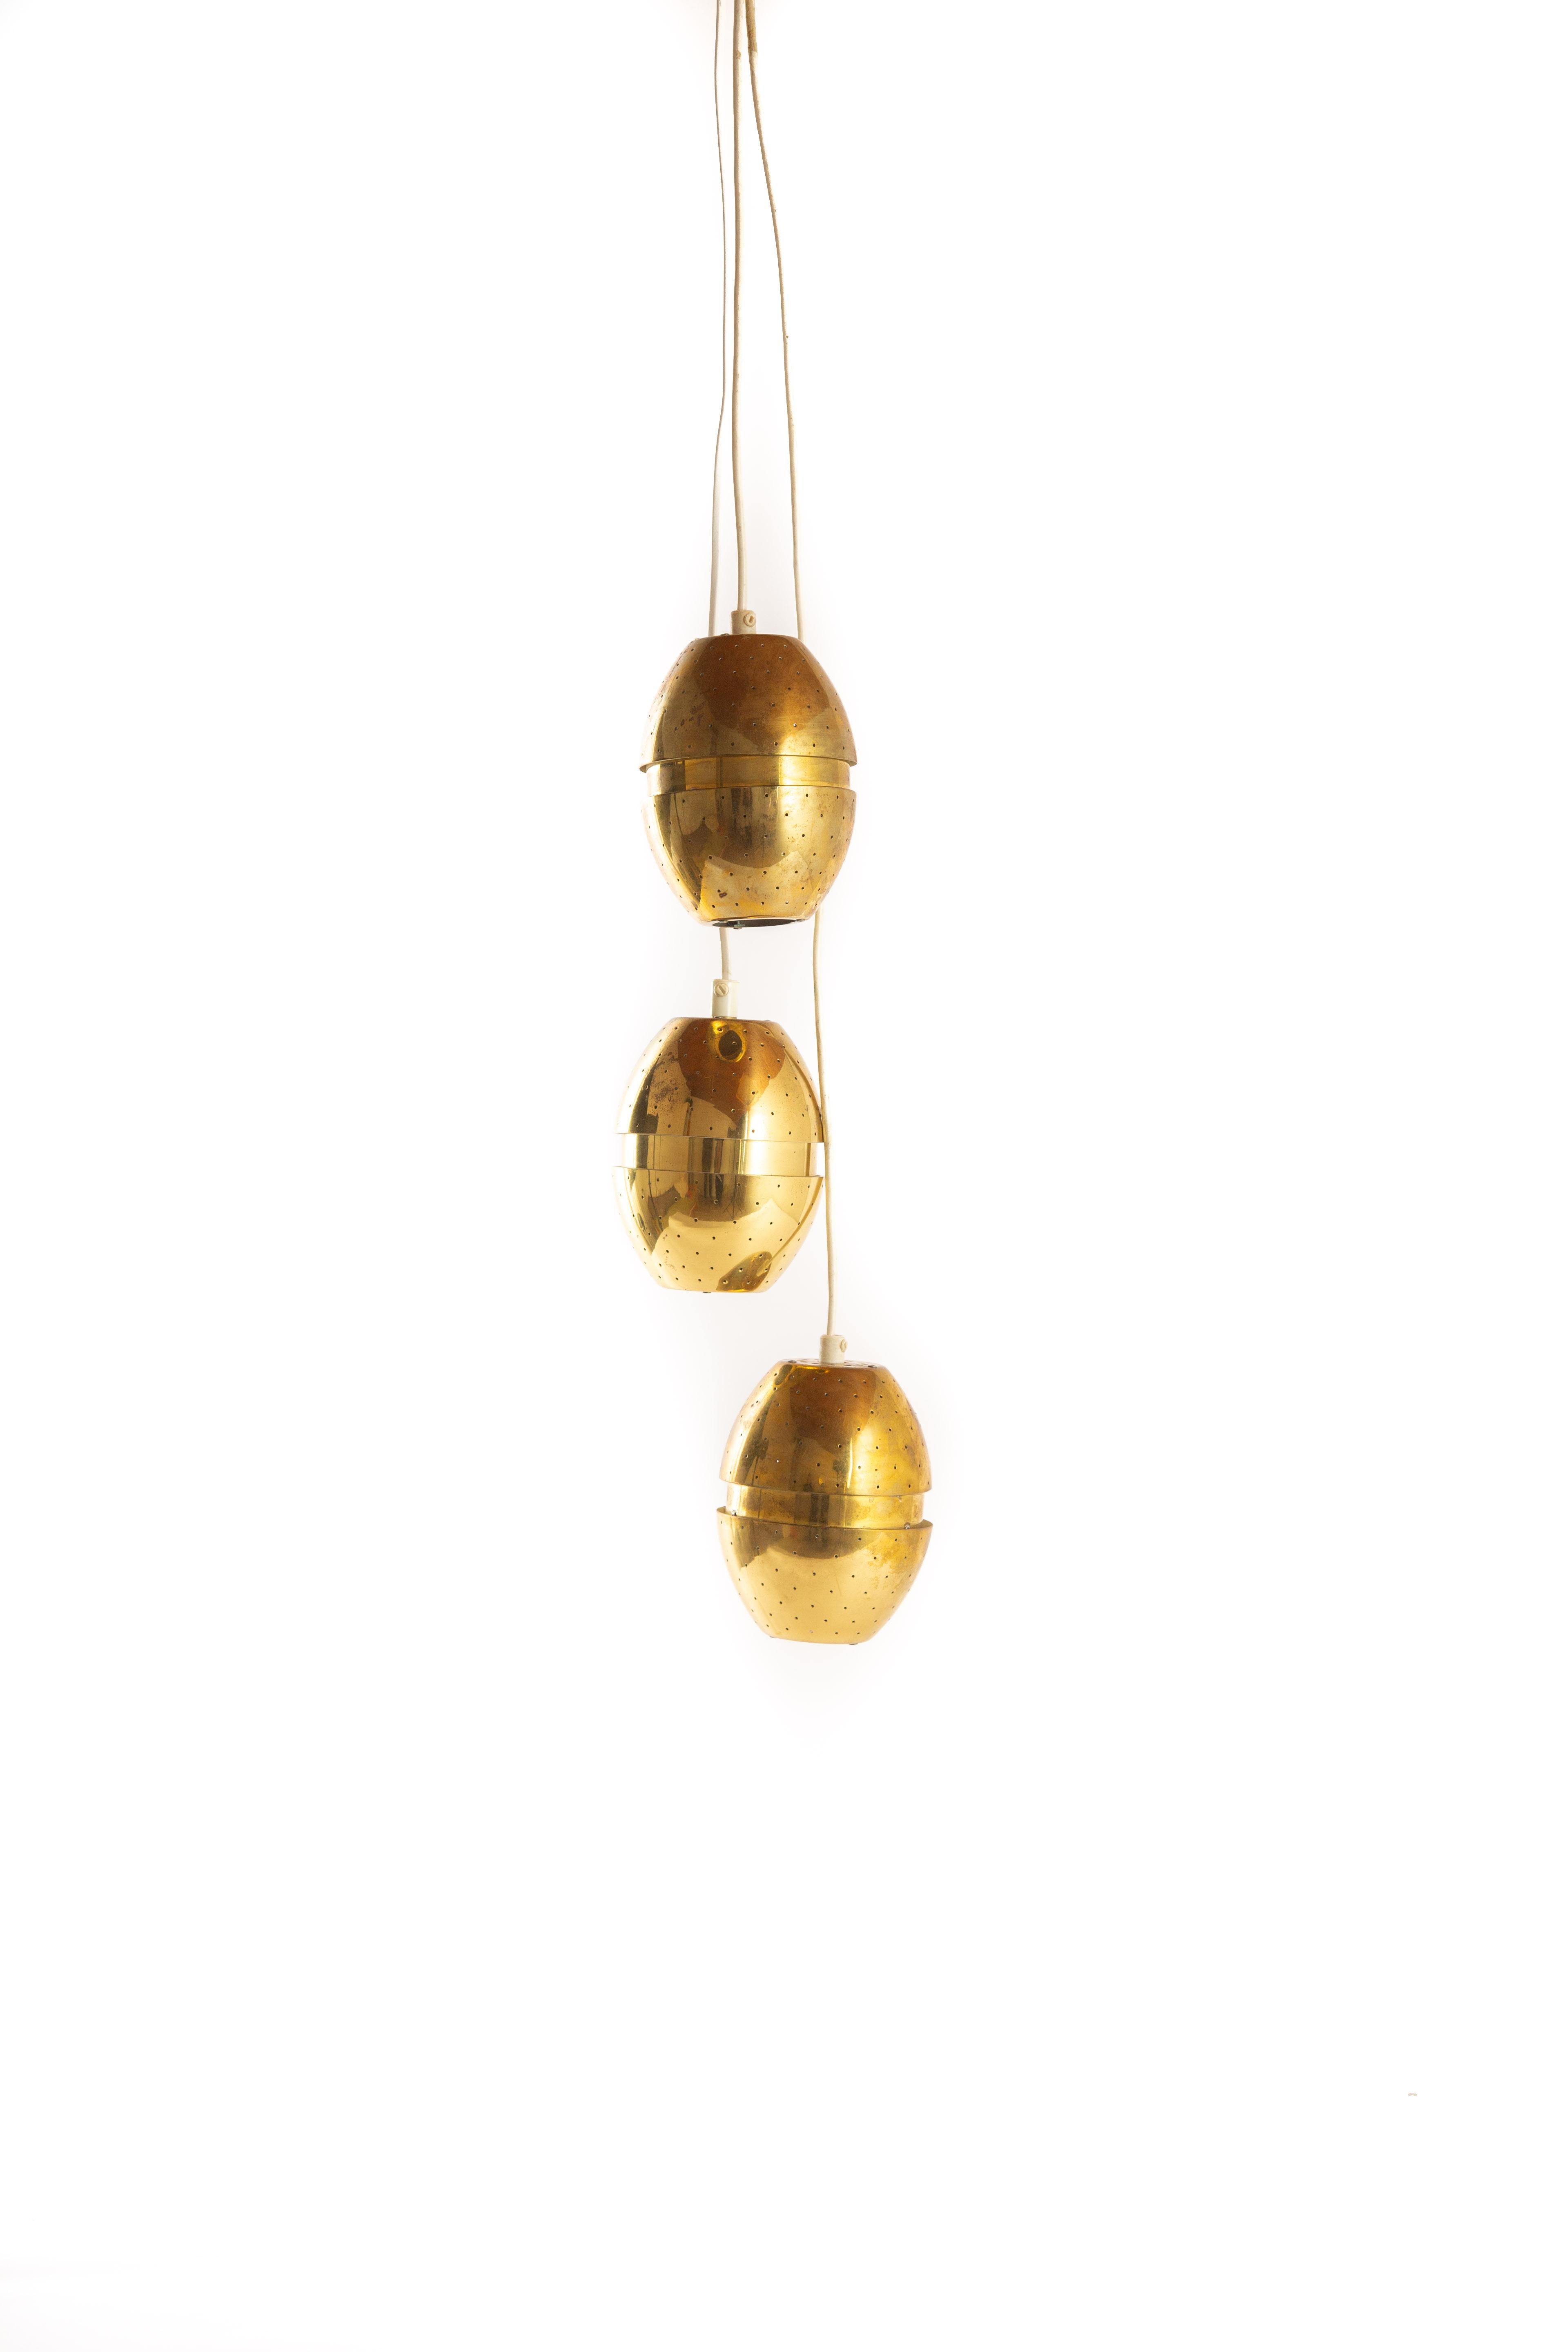 Scandinavian Modern Hans-Agne Jakobsson Brass Pendant Set of Three Drops